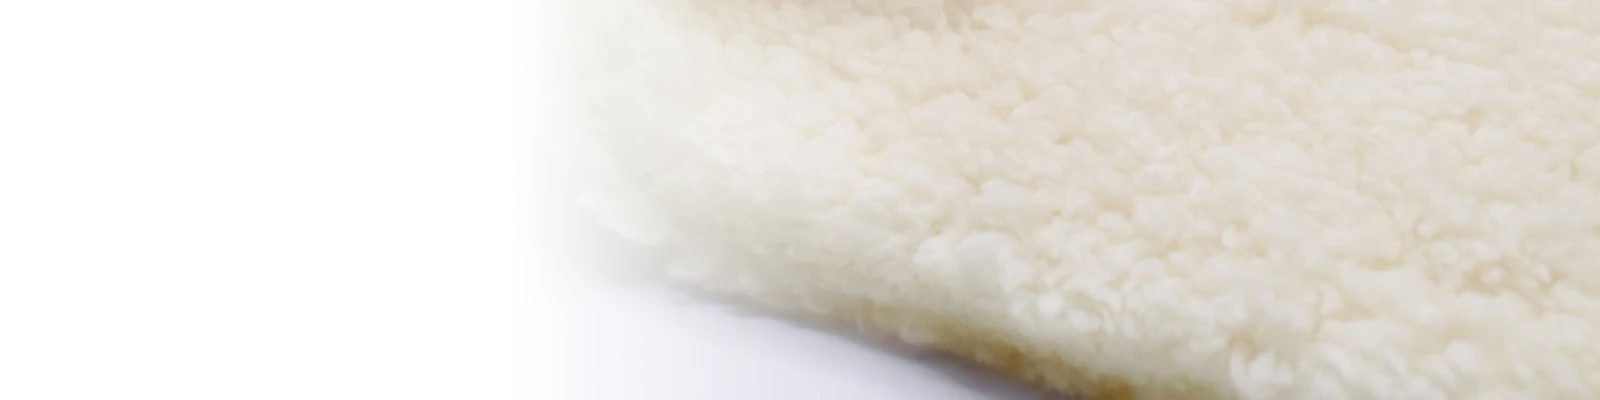 ผ้าขนแกะเทียม : ผ้าเชอร์ปา ผ้าโพลีเอสเตอร์รักษ์โลก ที่เป็นมิตรต่อสัตว์